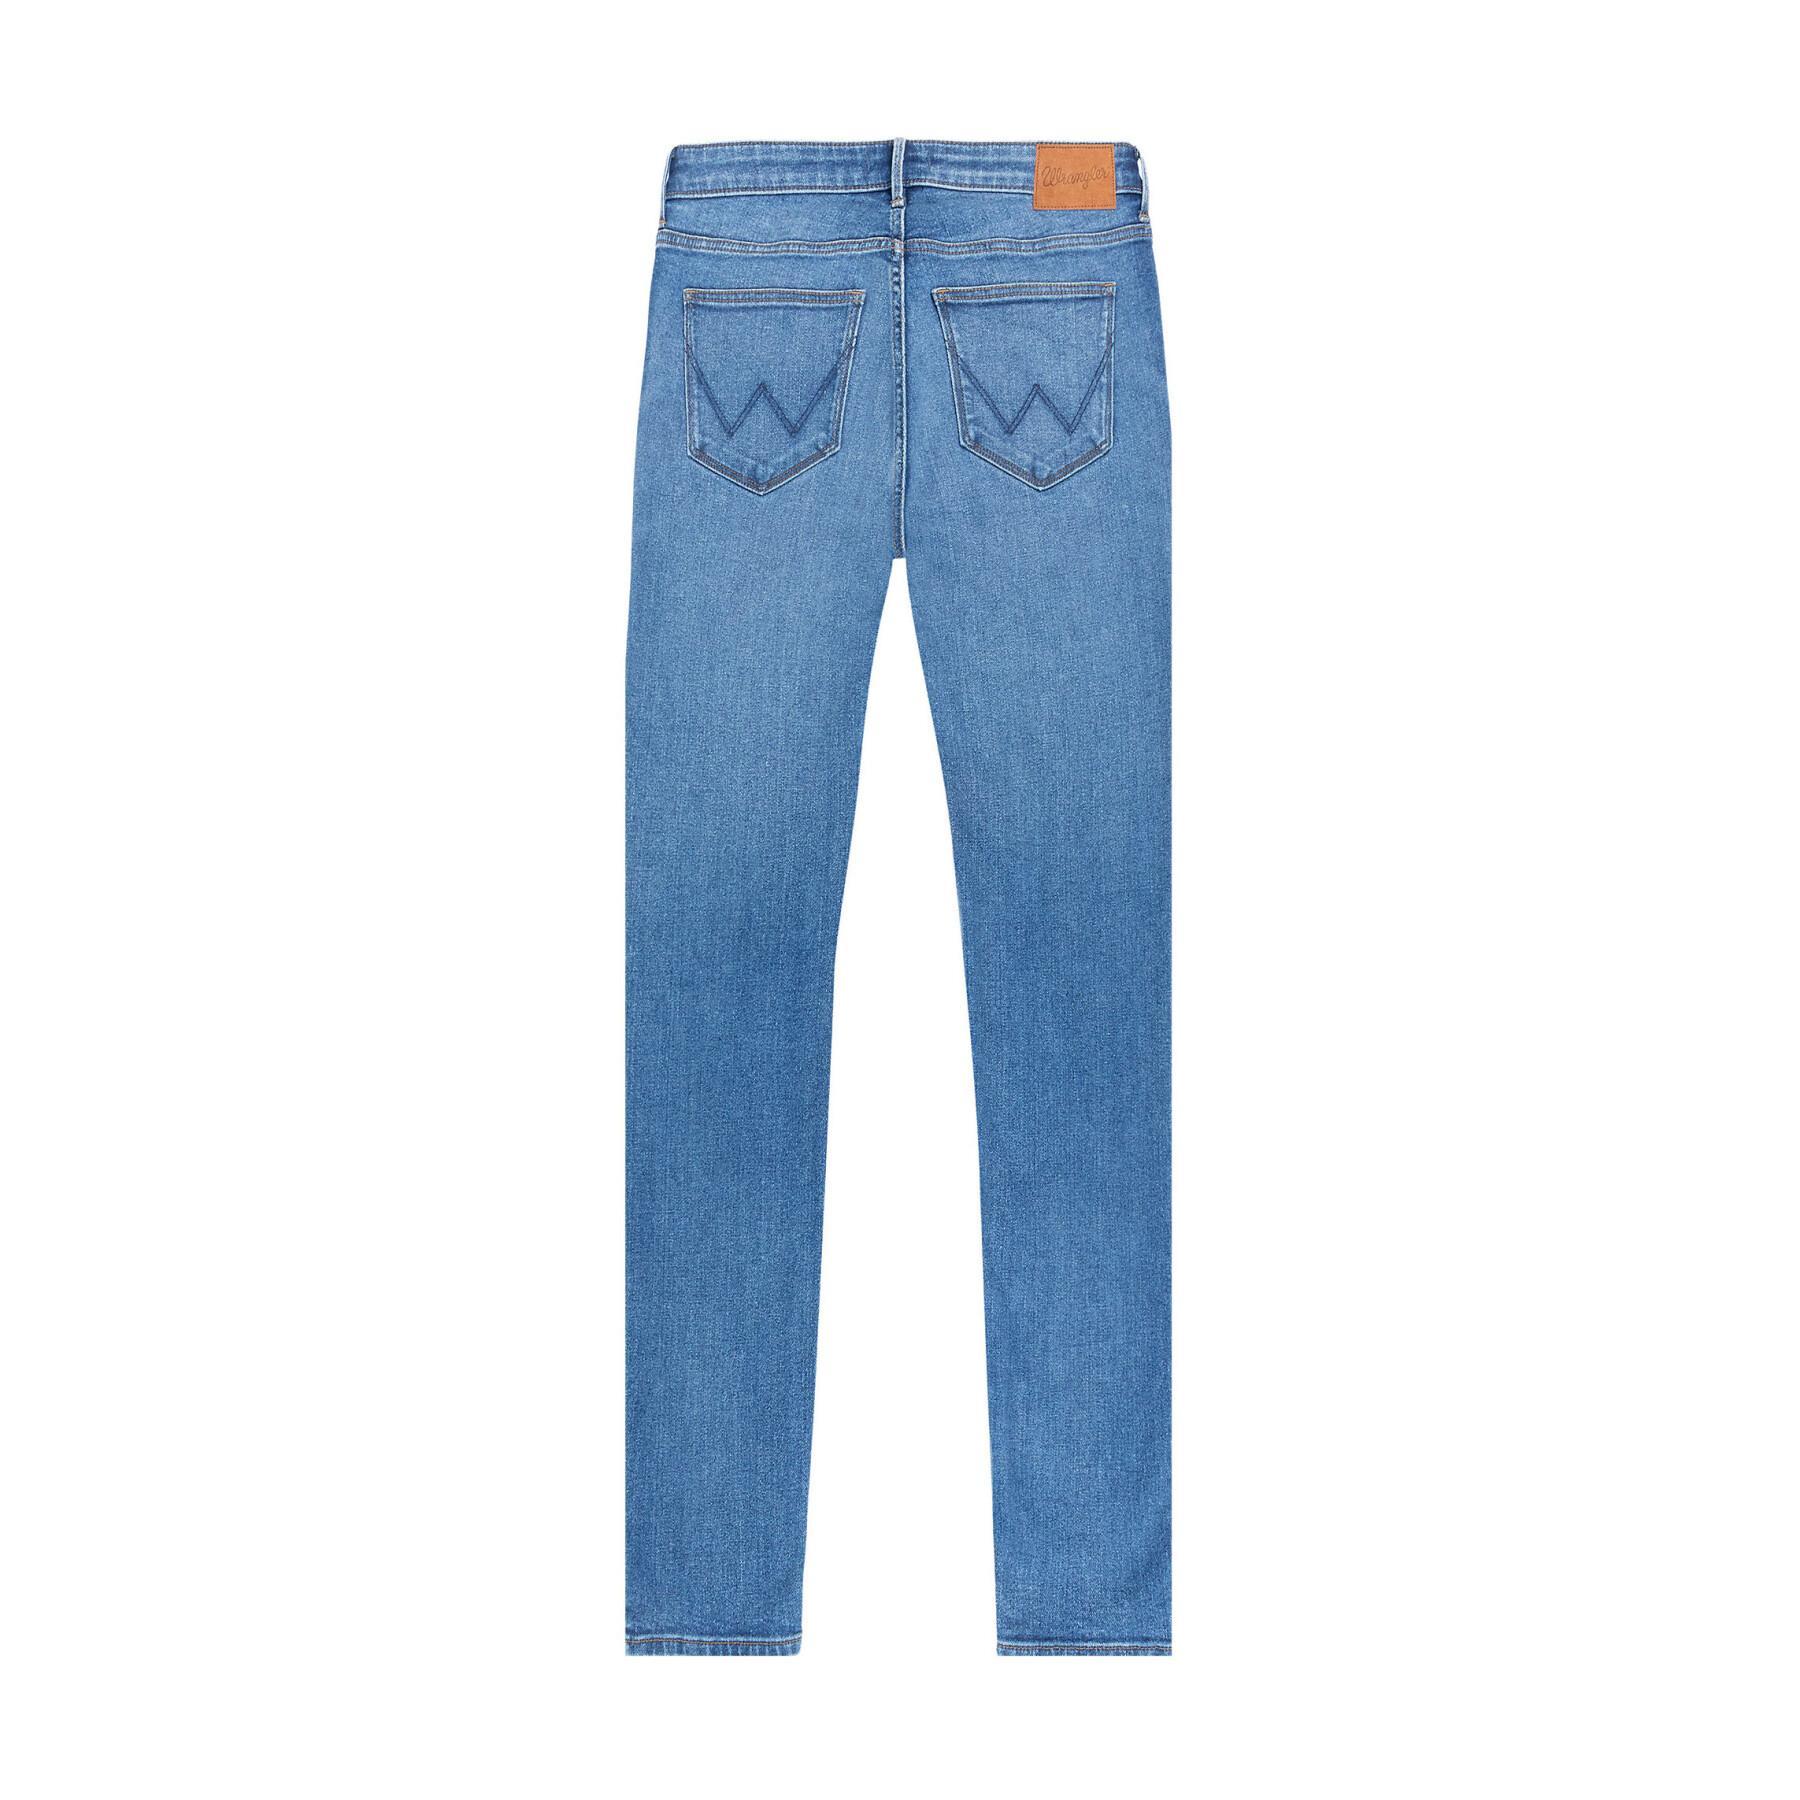 Jeans women's skinny Wrangler